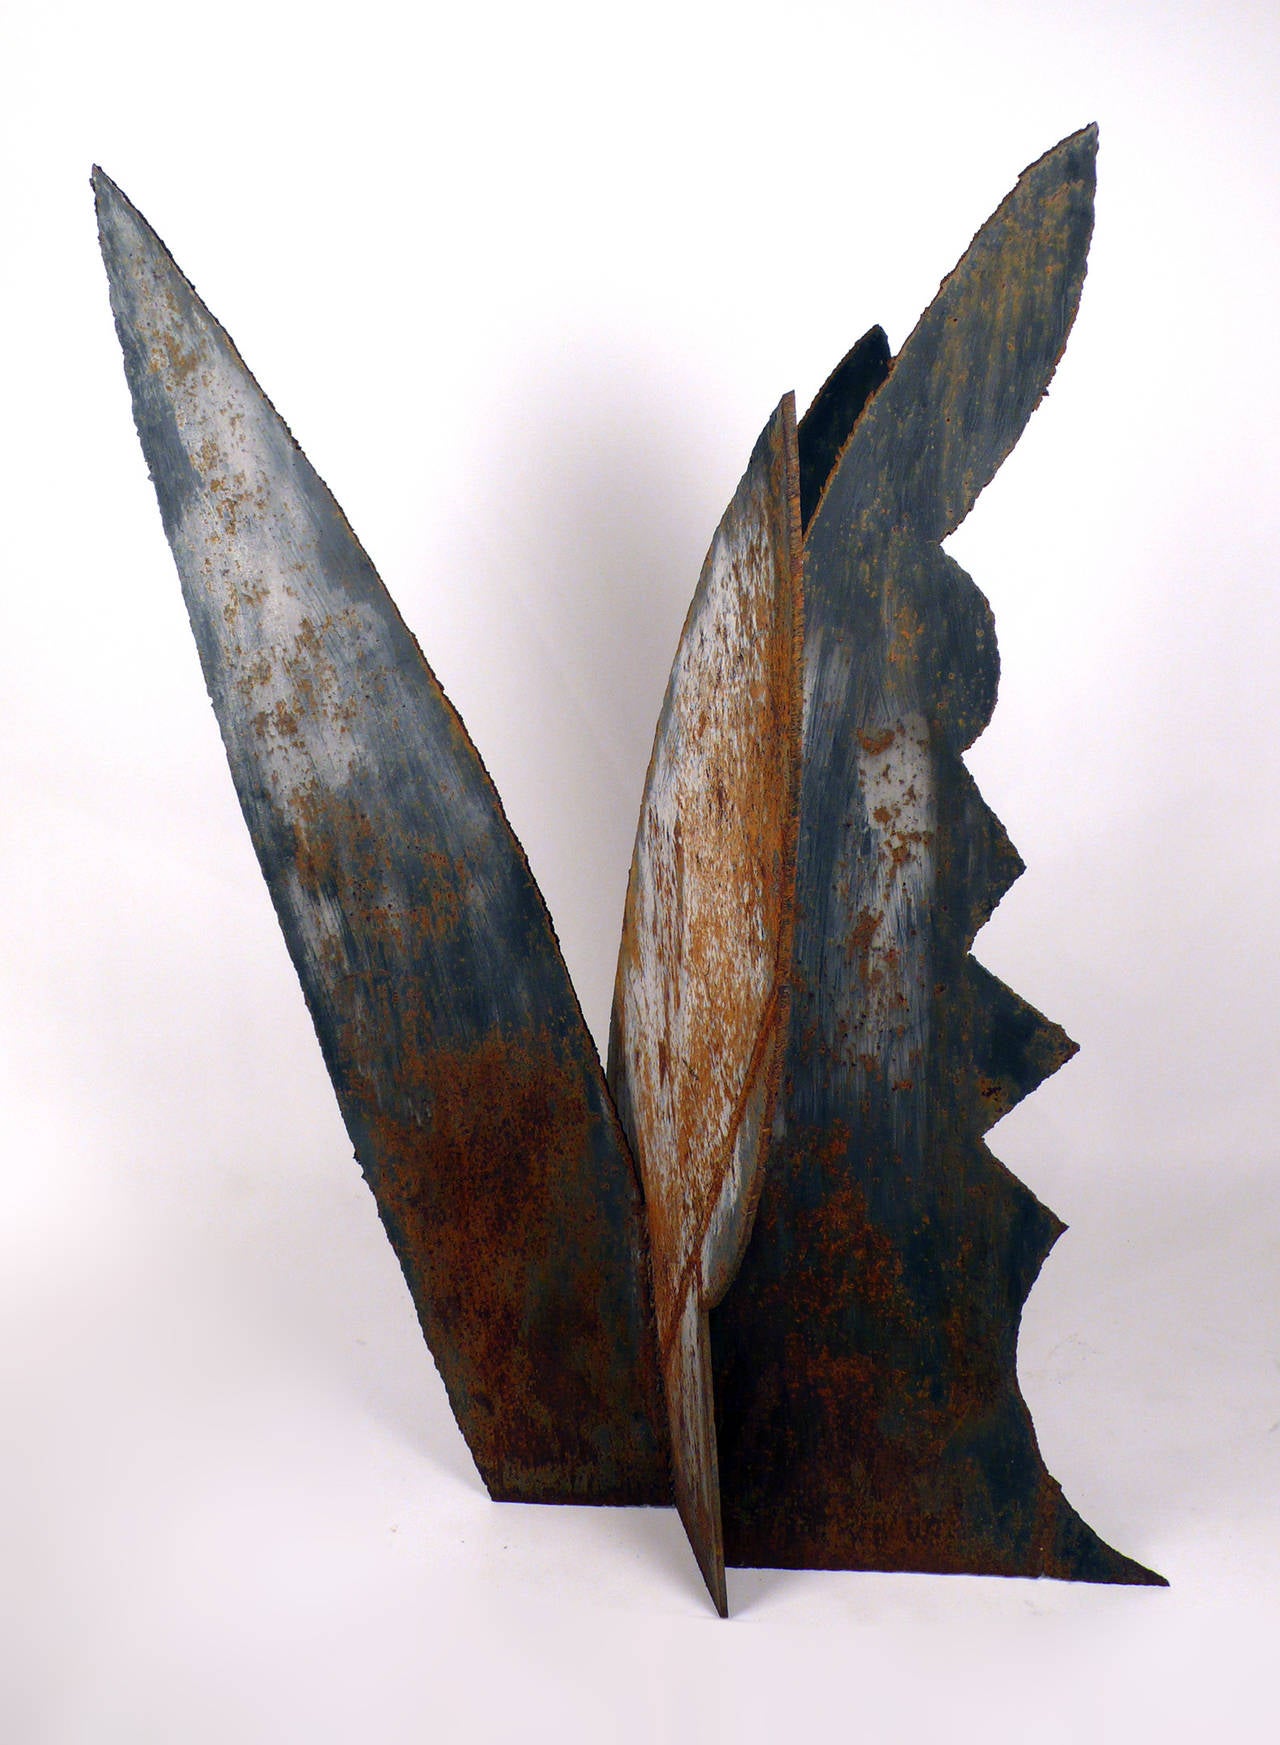 Brutalistische Skulptur des texanischen Künstlers Dr. Sam Jagoda aus den 1960er Jahren. Dieses schöne abstrakte Werk hat eine pflanzenähnliche Form, die auch vogel- und insektenartige Züge aufweist. Perfekt für drinnen und draußen. Der